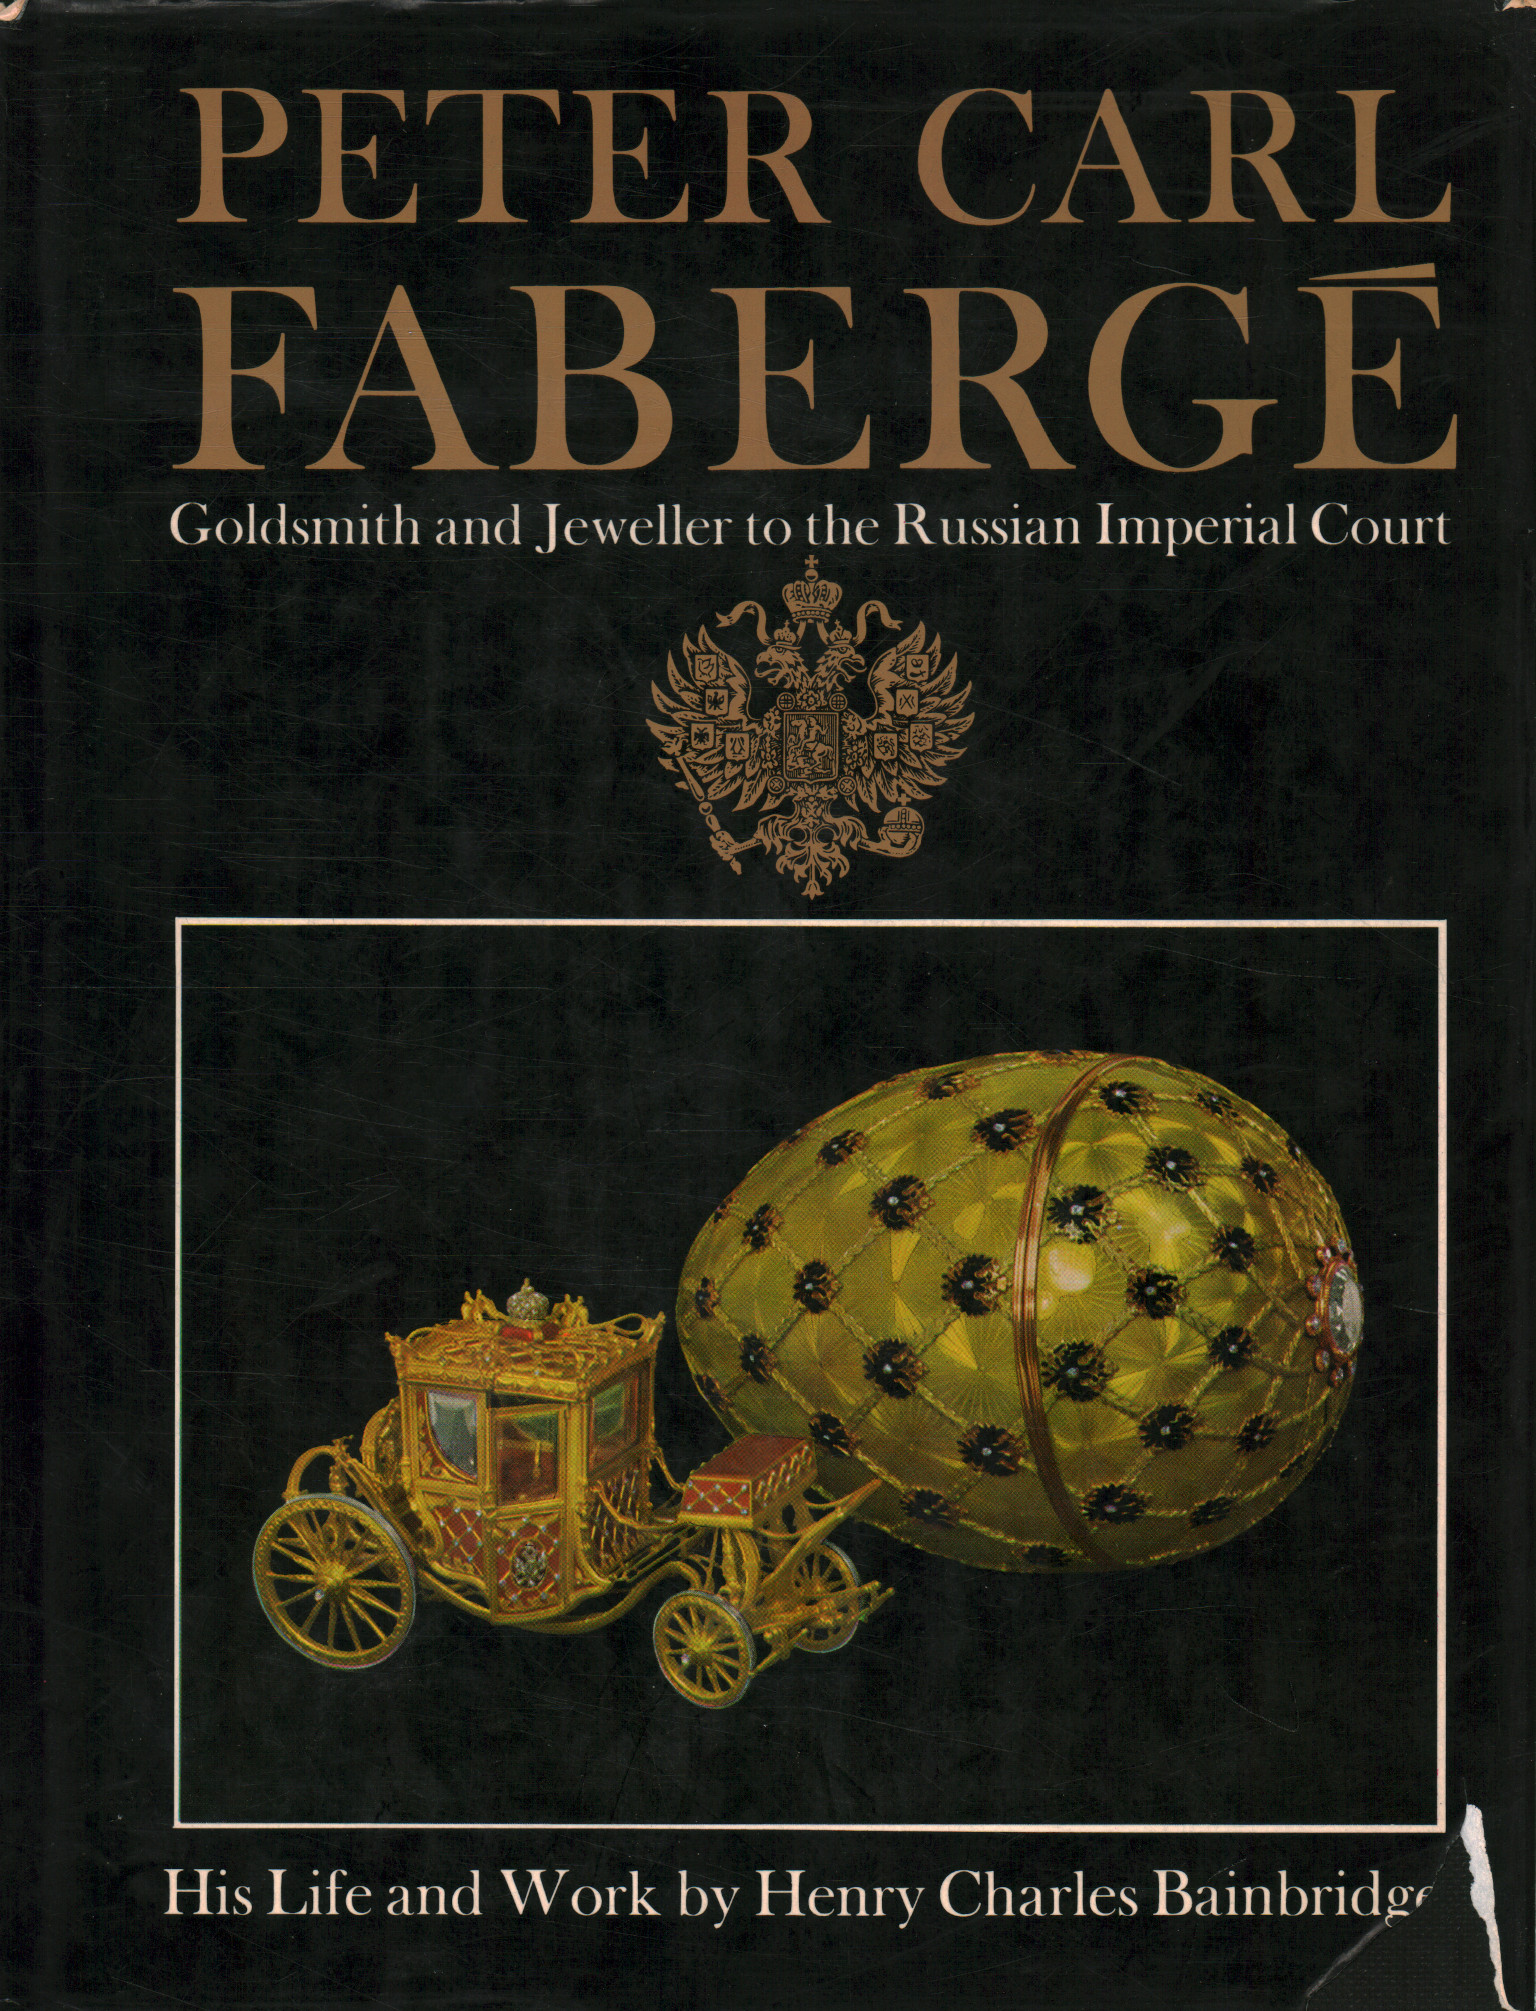 Peter Carl Fabergé Orfèvre et J